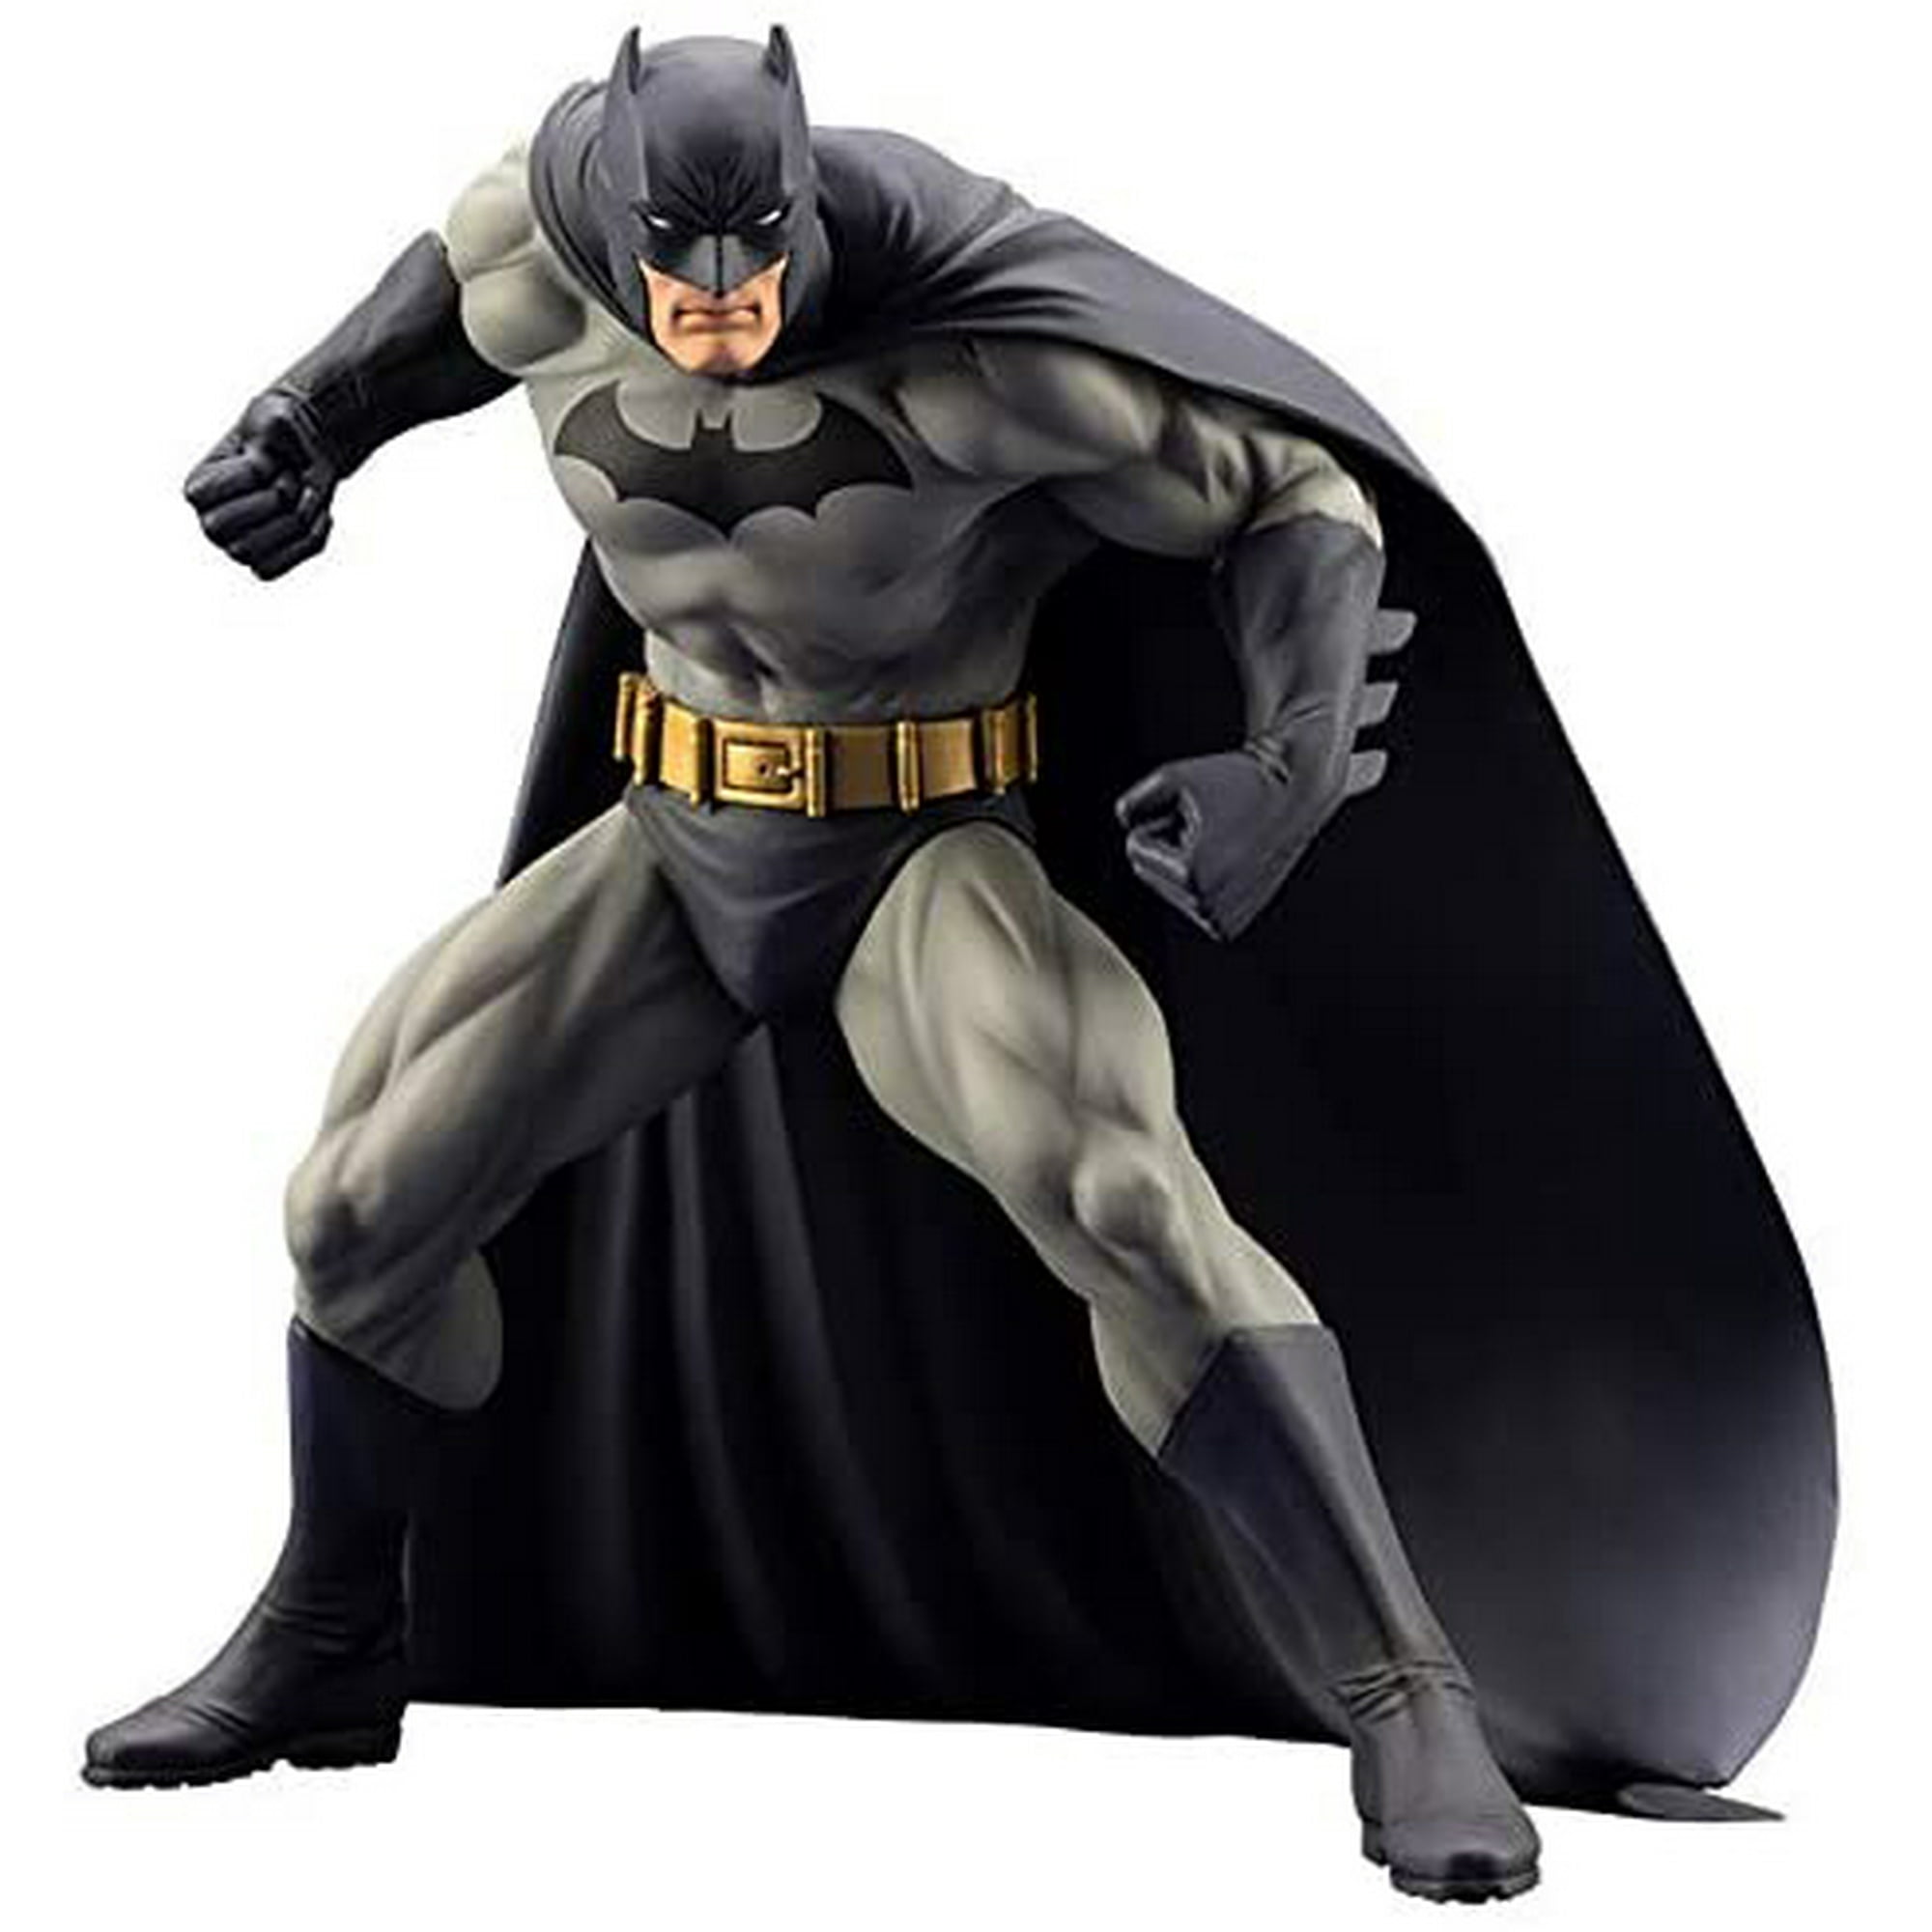 DC Comics Presents Batman Hush 7 Inch Statue Figure ArtFX - Batman Hush |  Walmart Canada